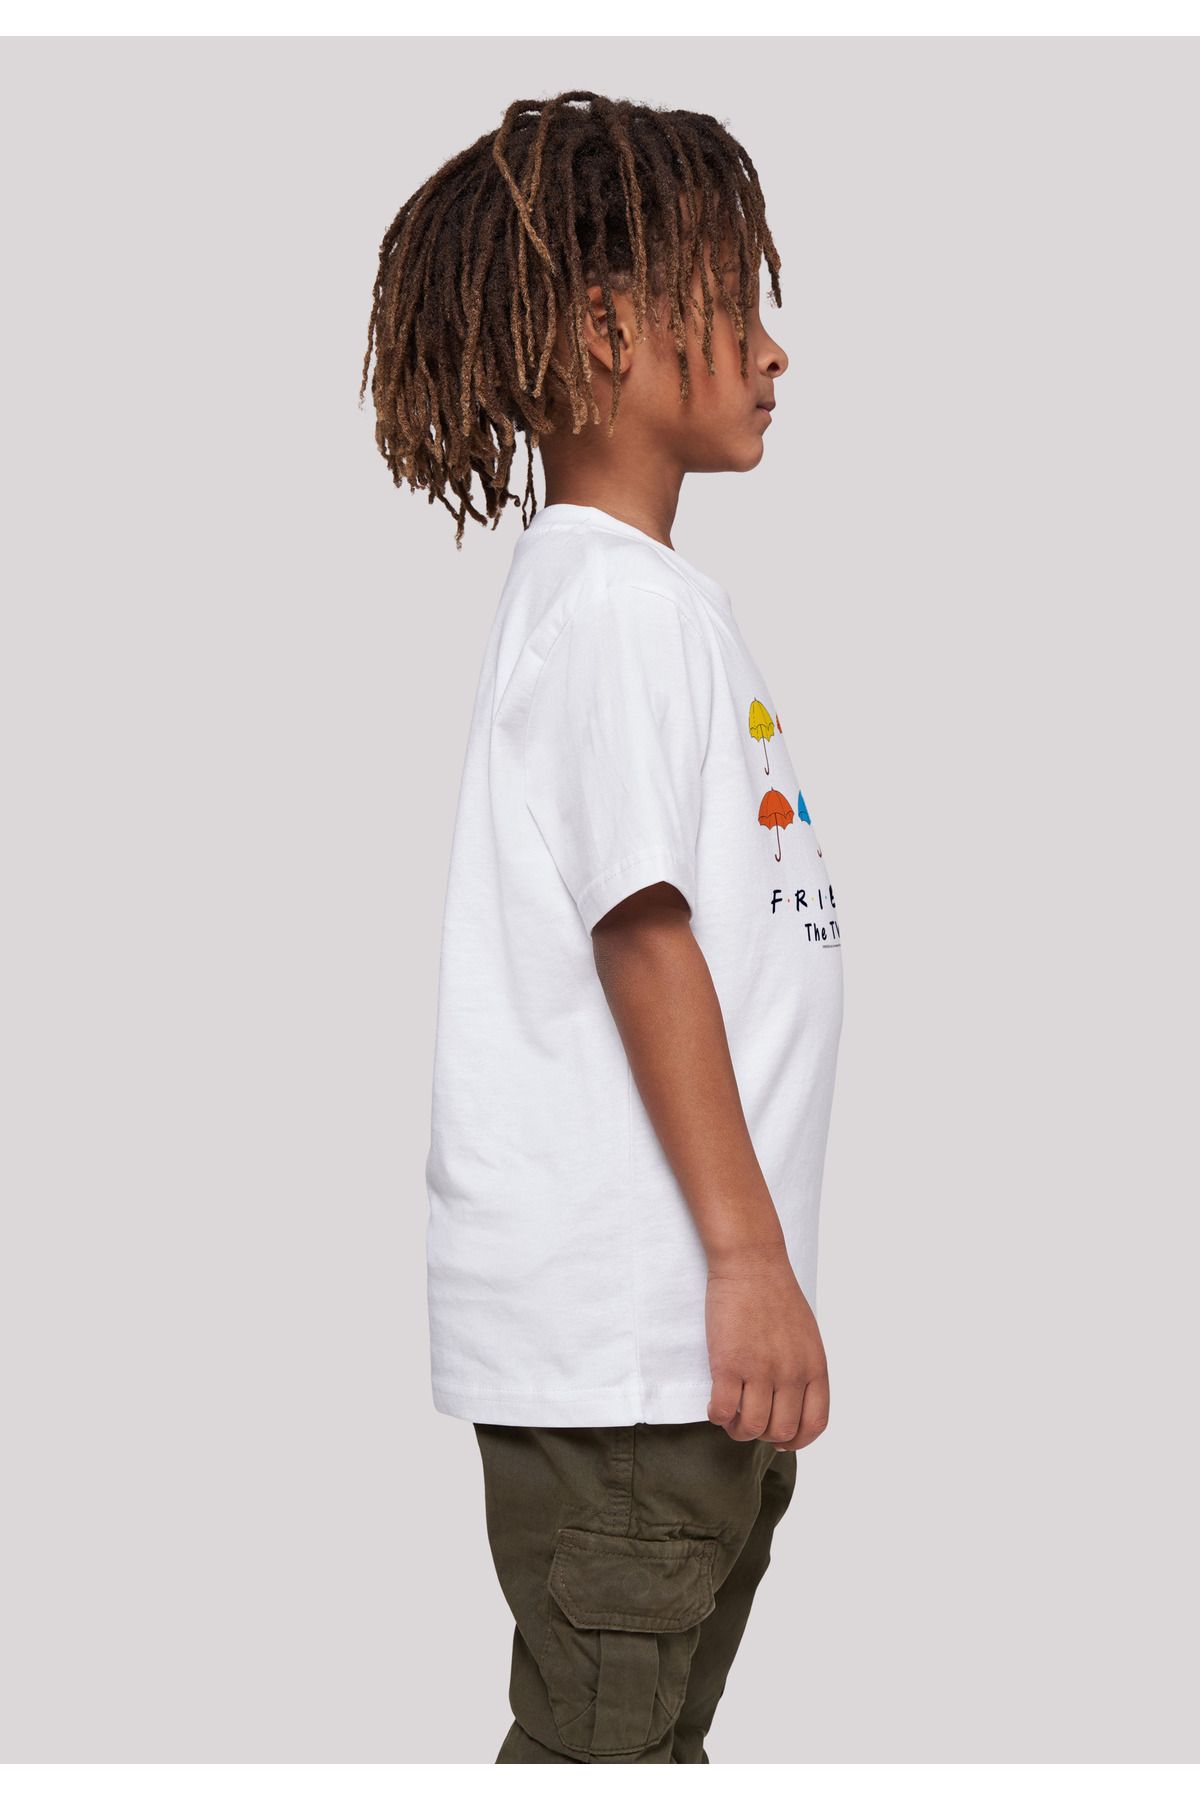 F4NT4STIC Kinder für von Basic-T-Shirt mit Farbige - Friends Trendyol Regenschirme Kinder